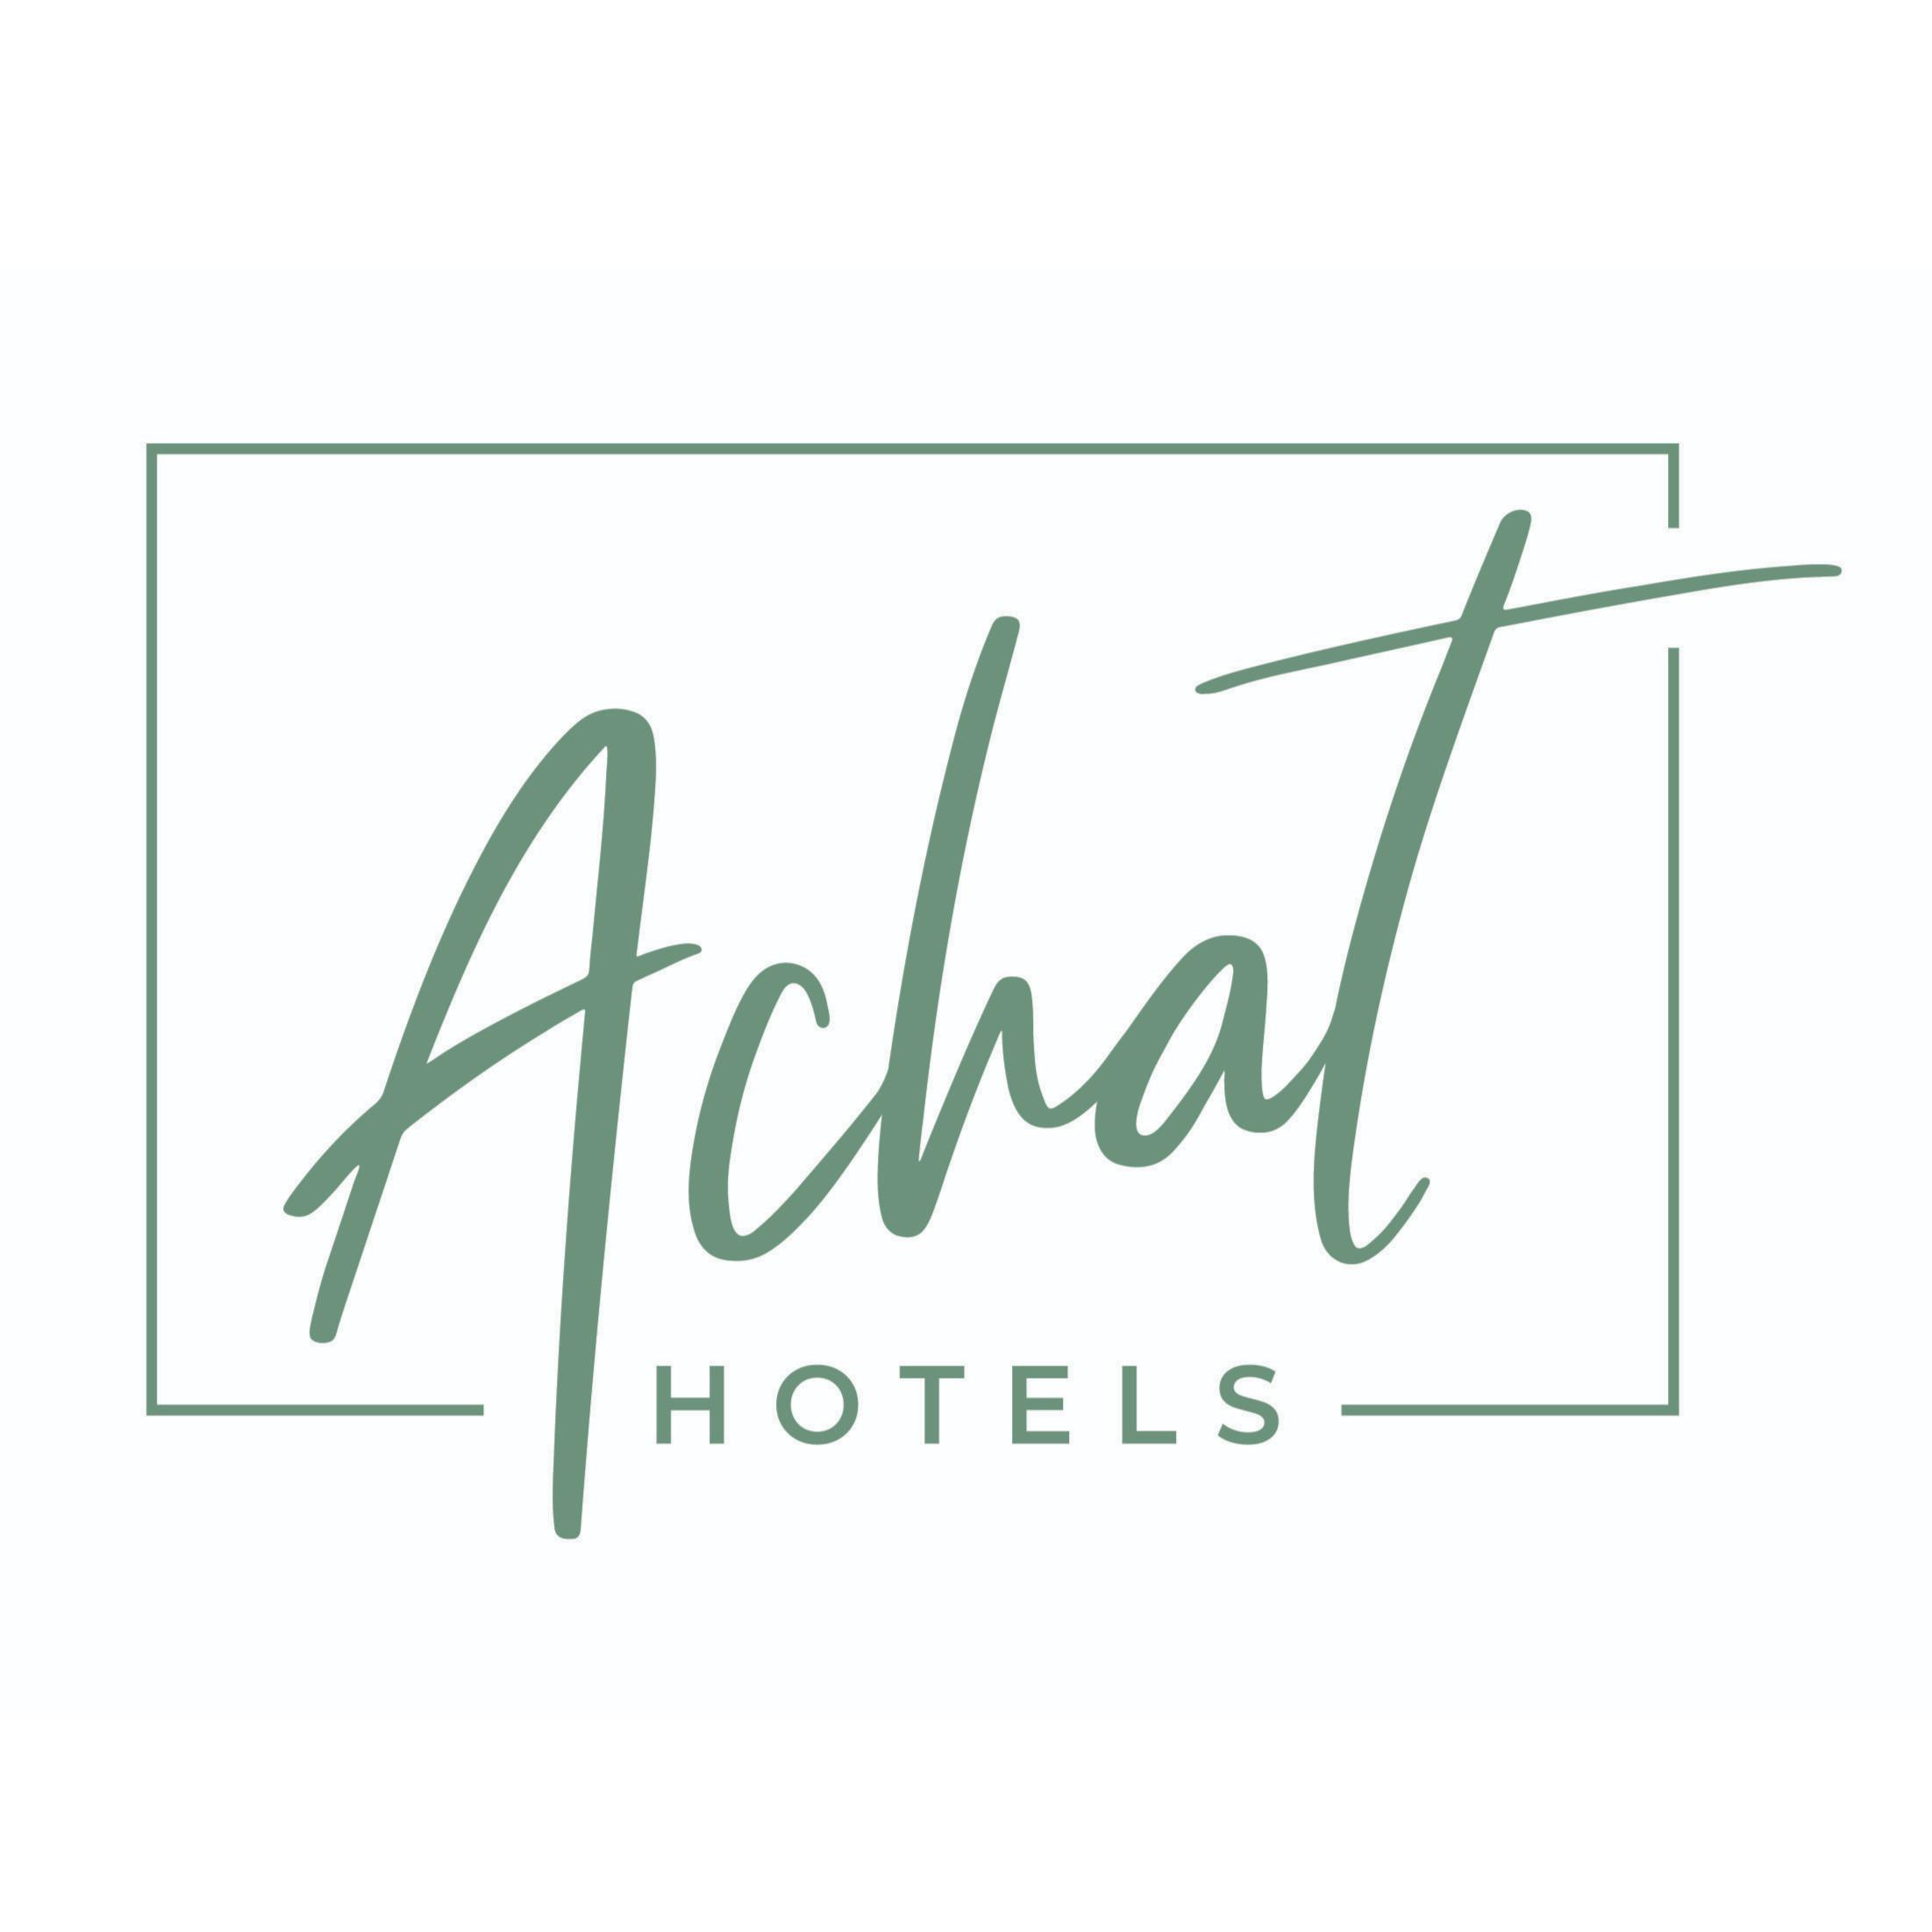 ACHAT Hotel Schreiberhof Aschheim in Aschheim - Logo